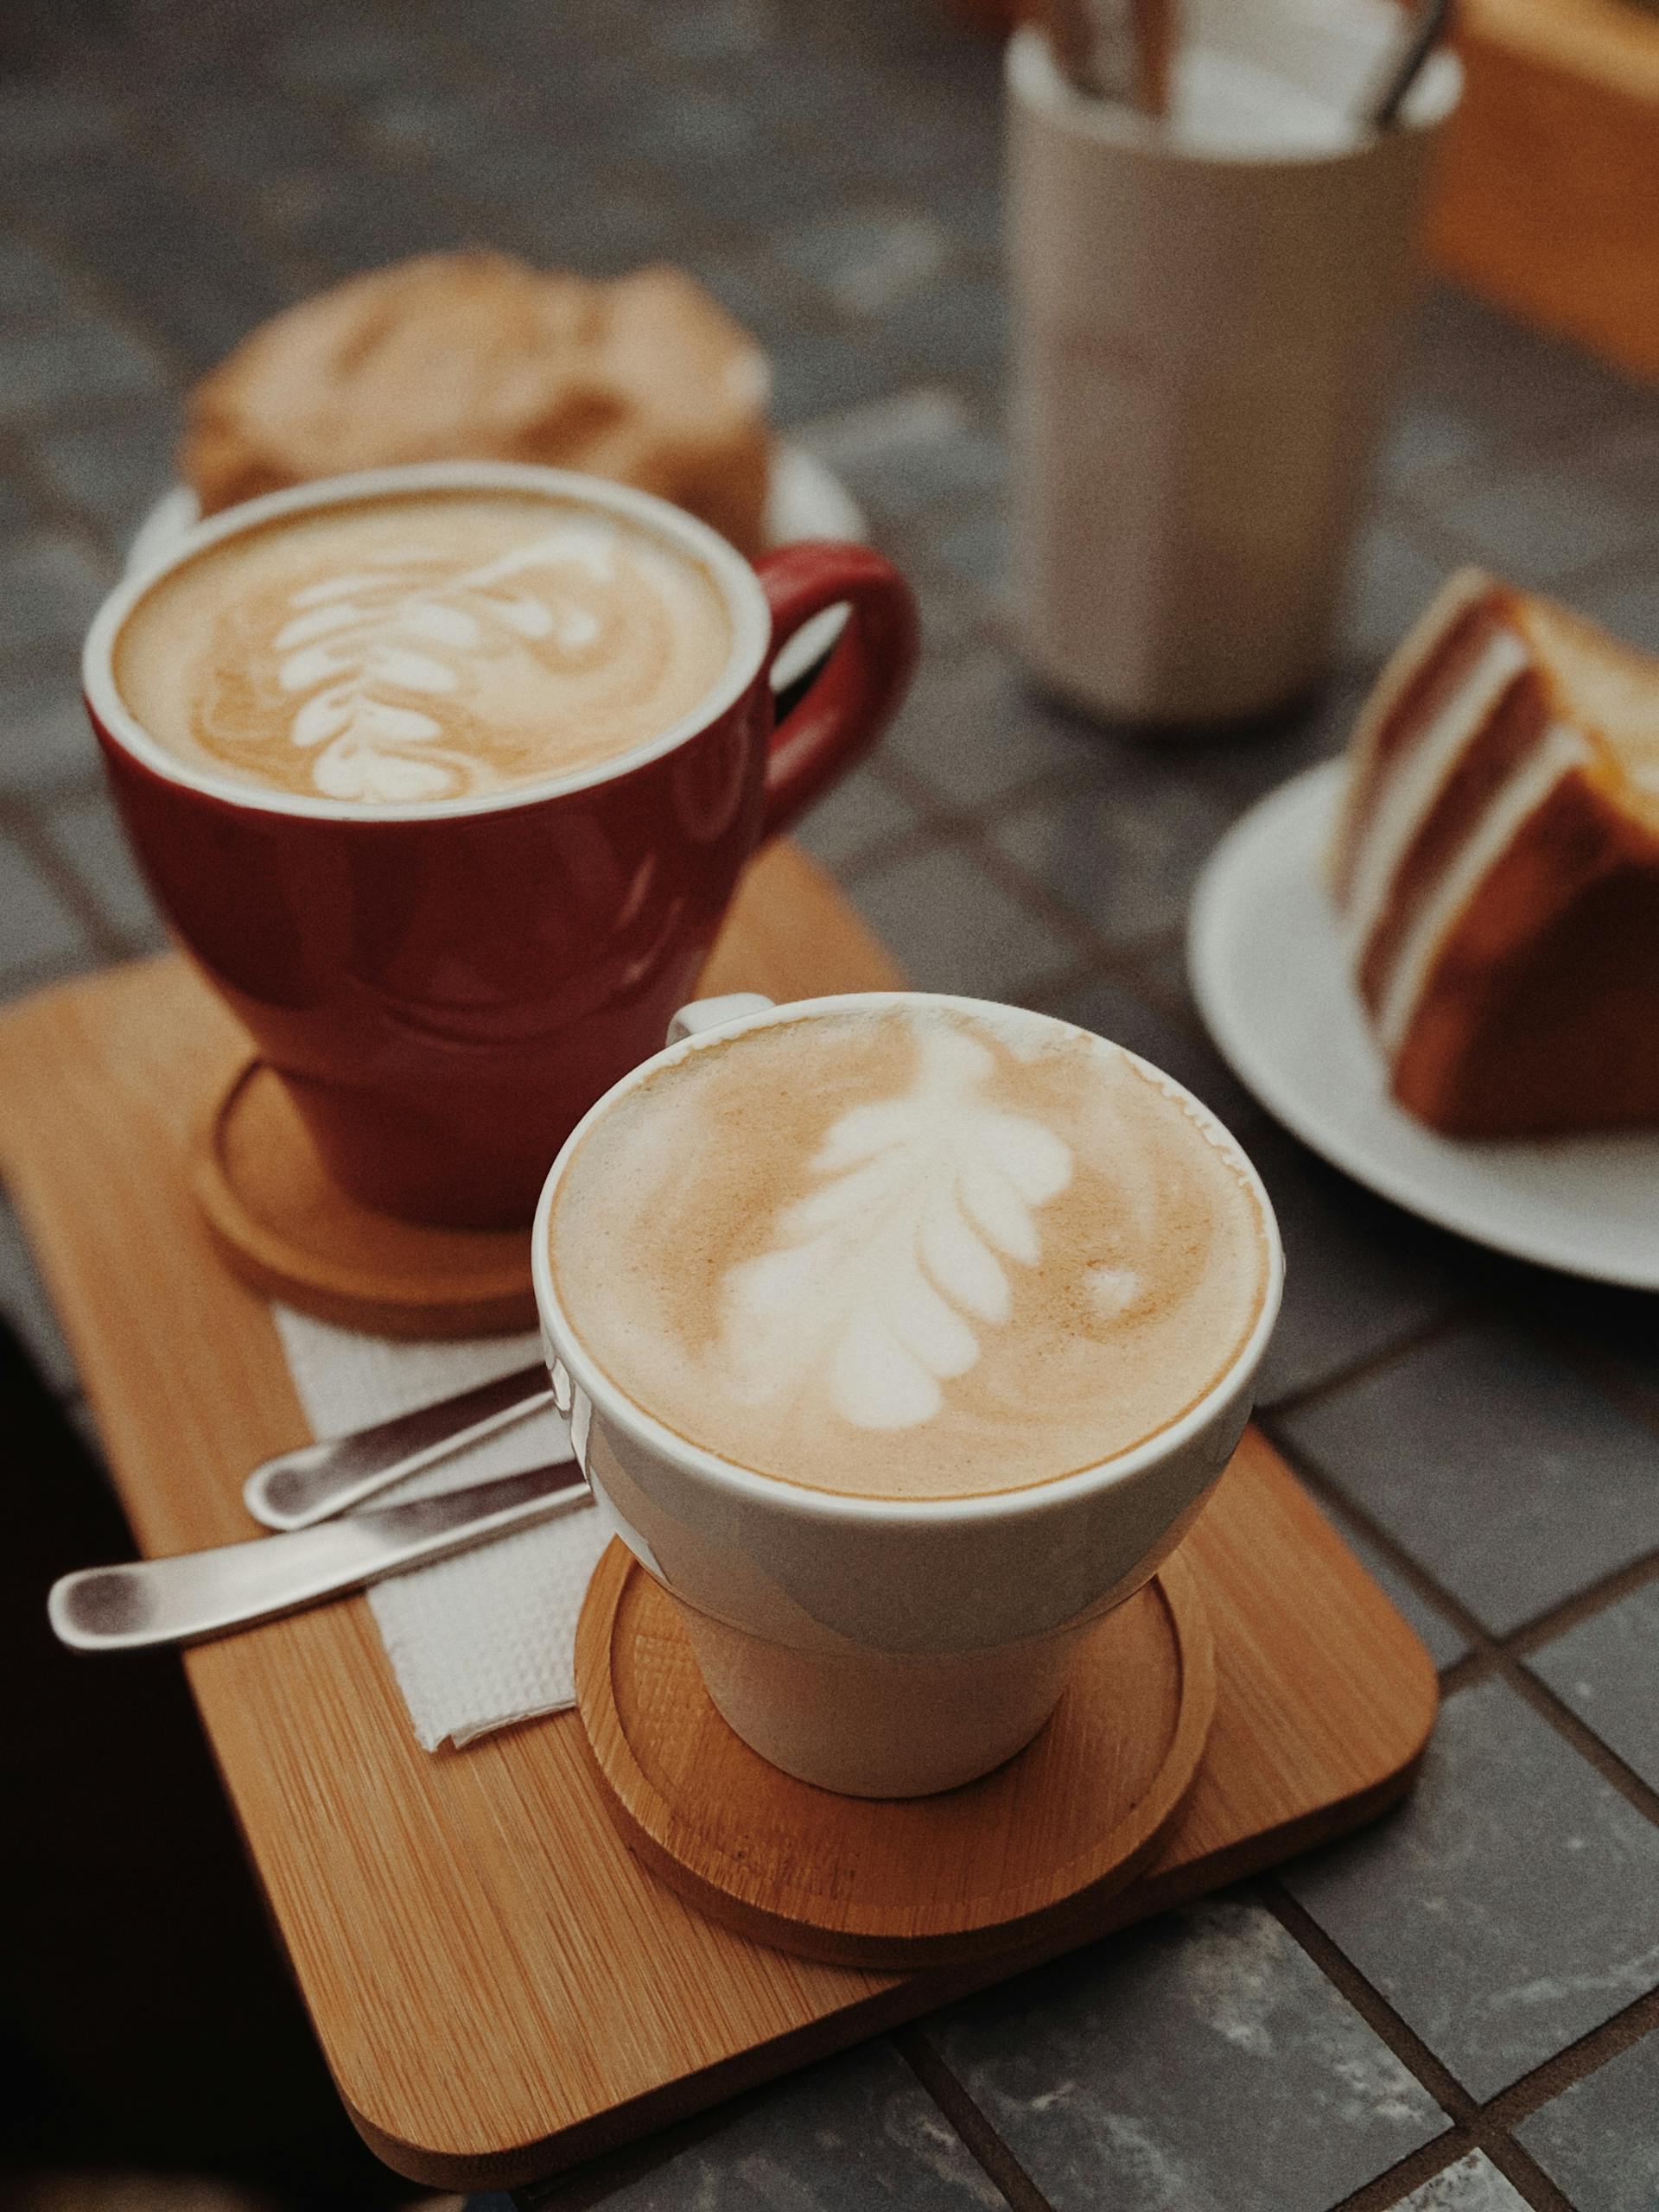 Dos tazas de café marrón sobre una bandeja marrón | Fuente: Pexels